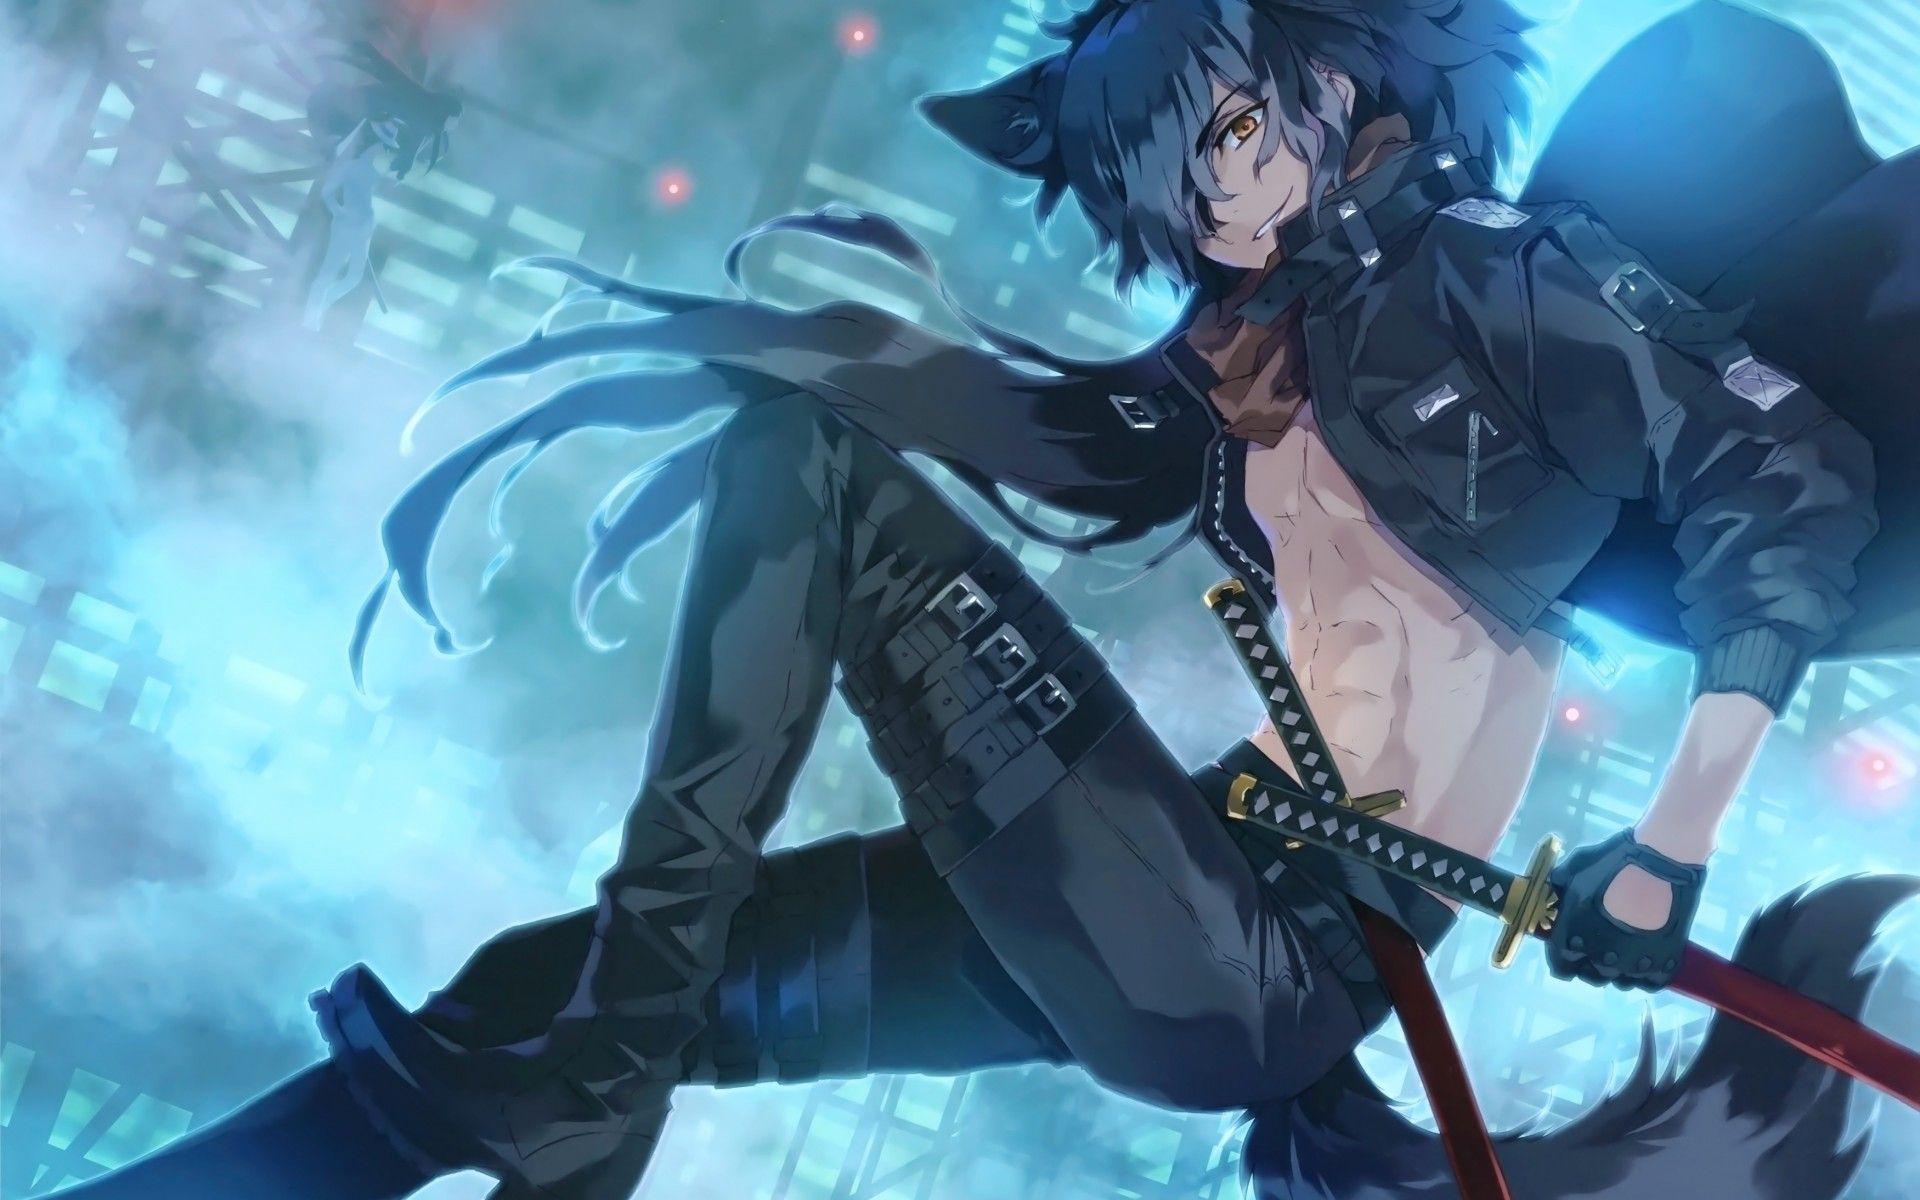 sword anime guy with blue hair